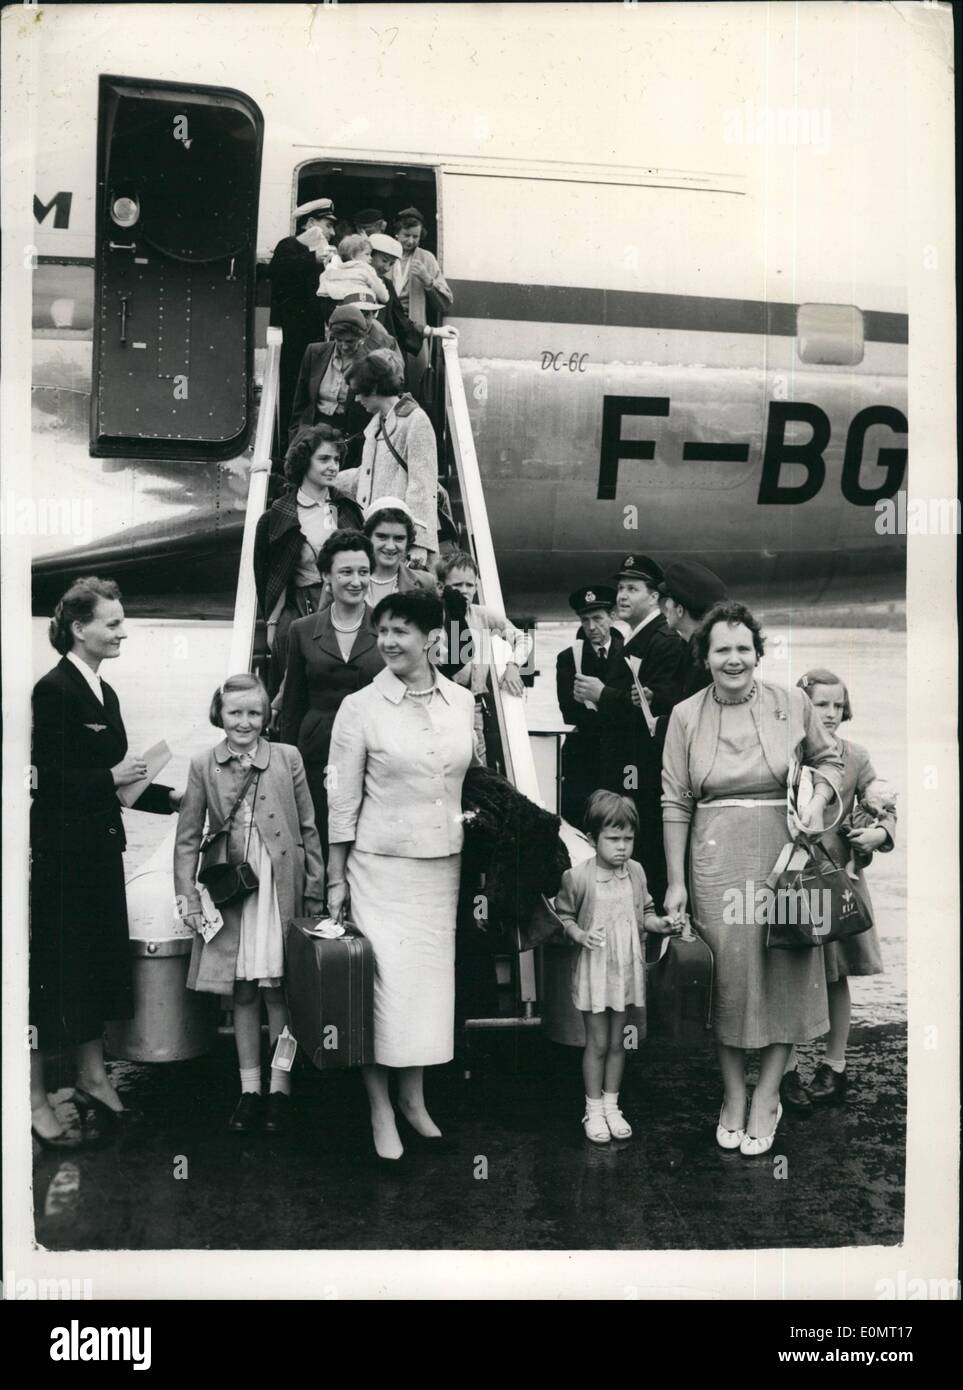 8. August 1956 - kommen mehr Frauen und Kinder aus der Suez-Zone. A.B.O.A.C. Flugzeug angekommen am Flughafen London mit Personal Familien von der Shell Oil Company - geflogen von Kairo - angesichts der Krise des Suez-Kanals. Keystone-Fotoshows:-einige der Familien bei der Ankunft in London am Flughafen von Kairo. Stockfoto